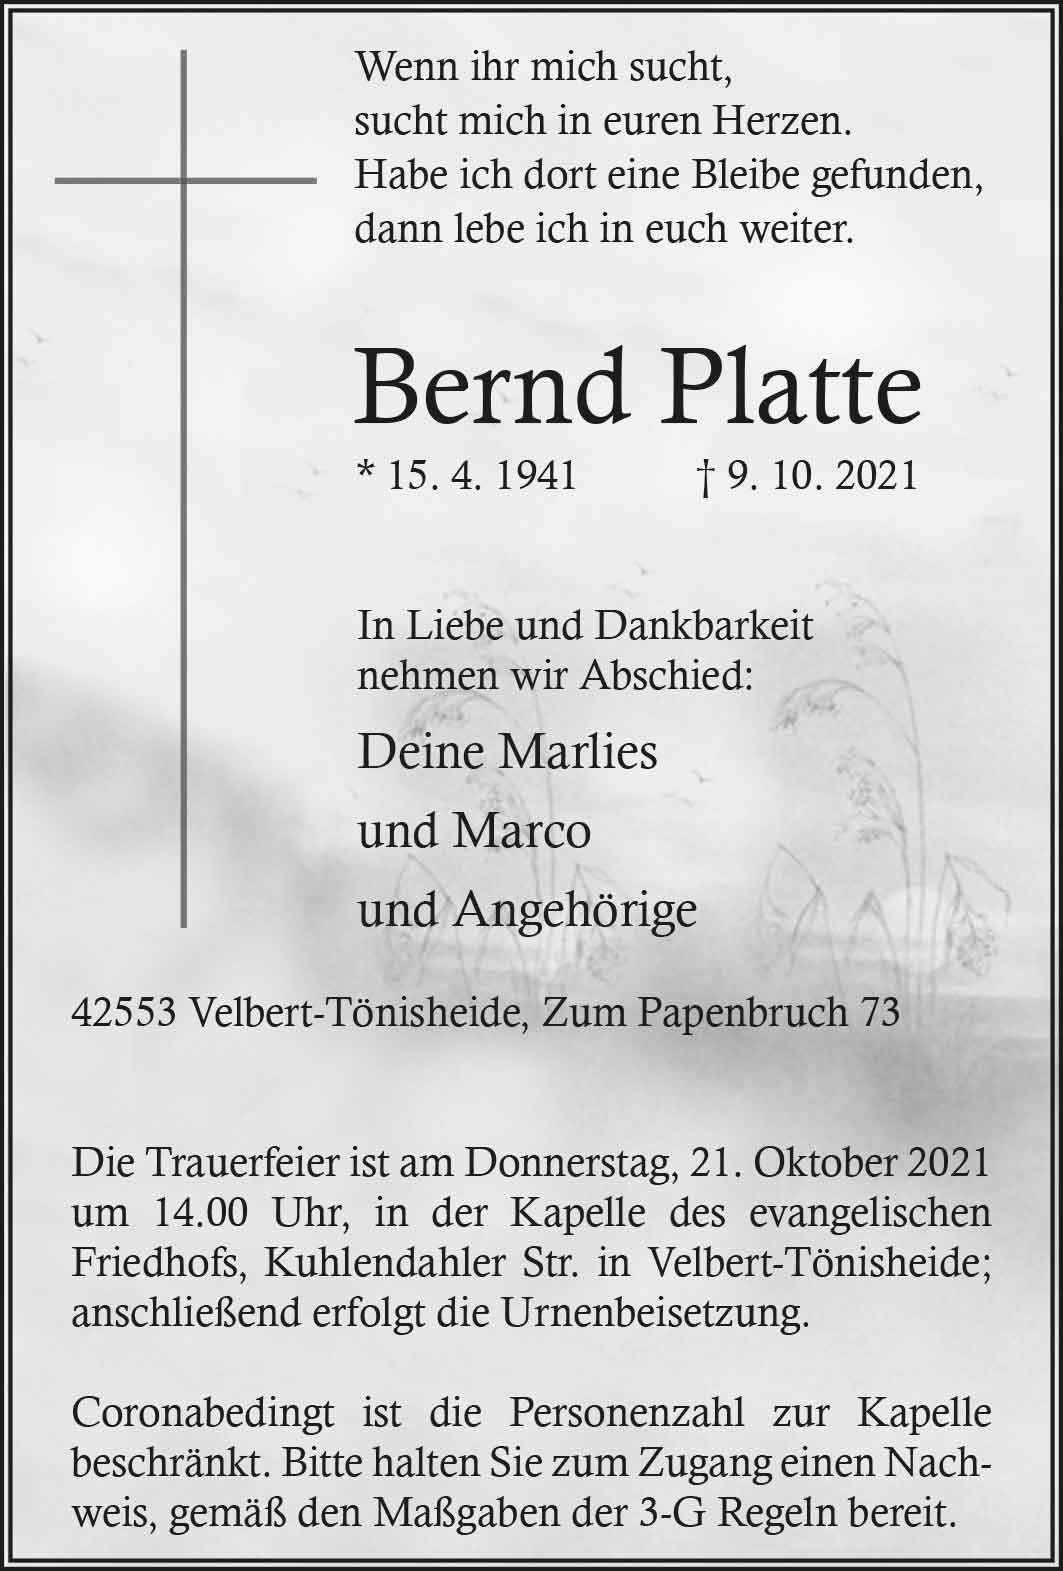 Bernd Platte † 9. 10. 2021